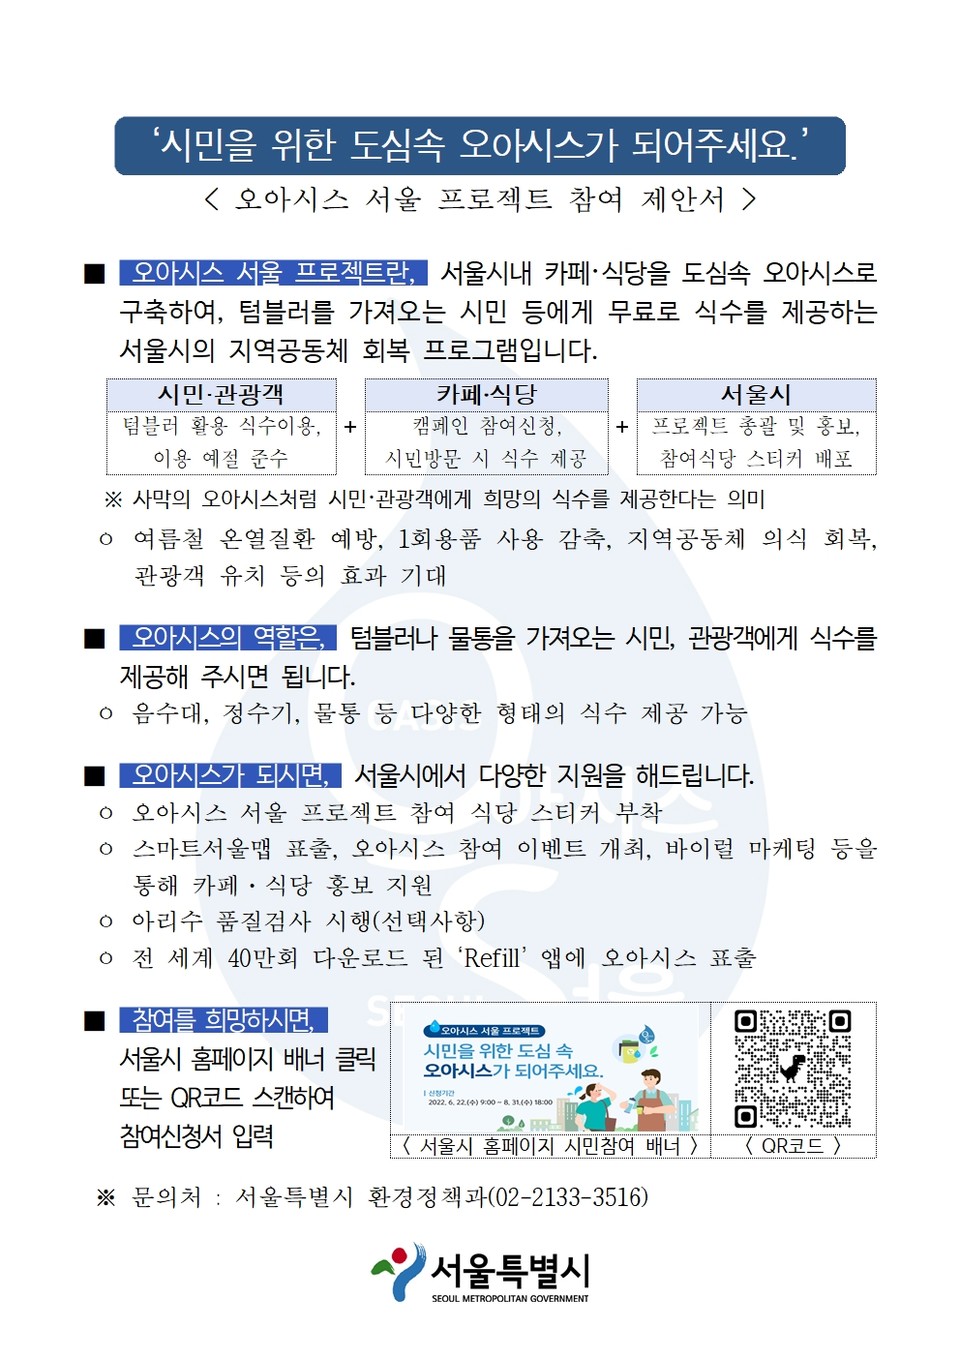 오아시스 서울 프로젝트 참여 제안서